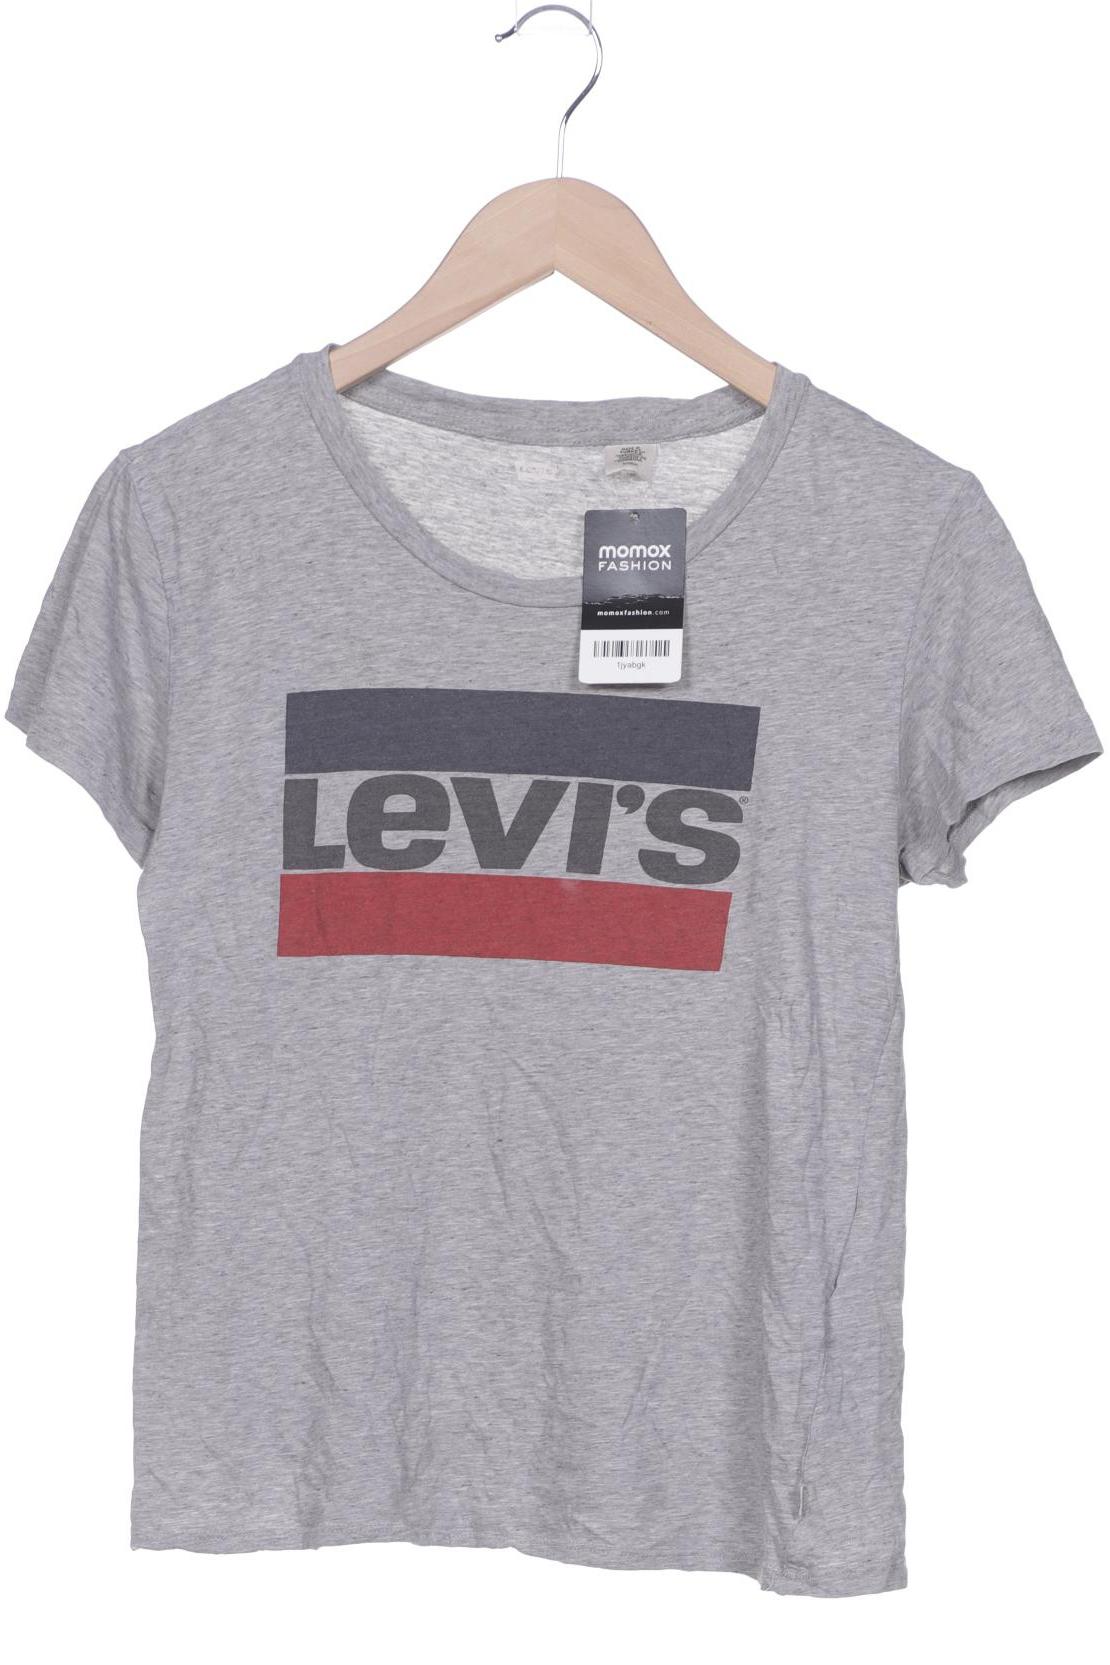 Levis Damen T-Shirt, grau von Levis